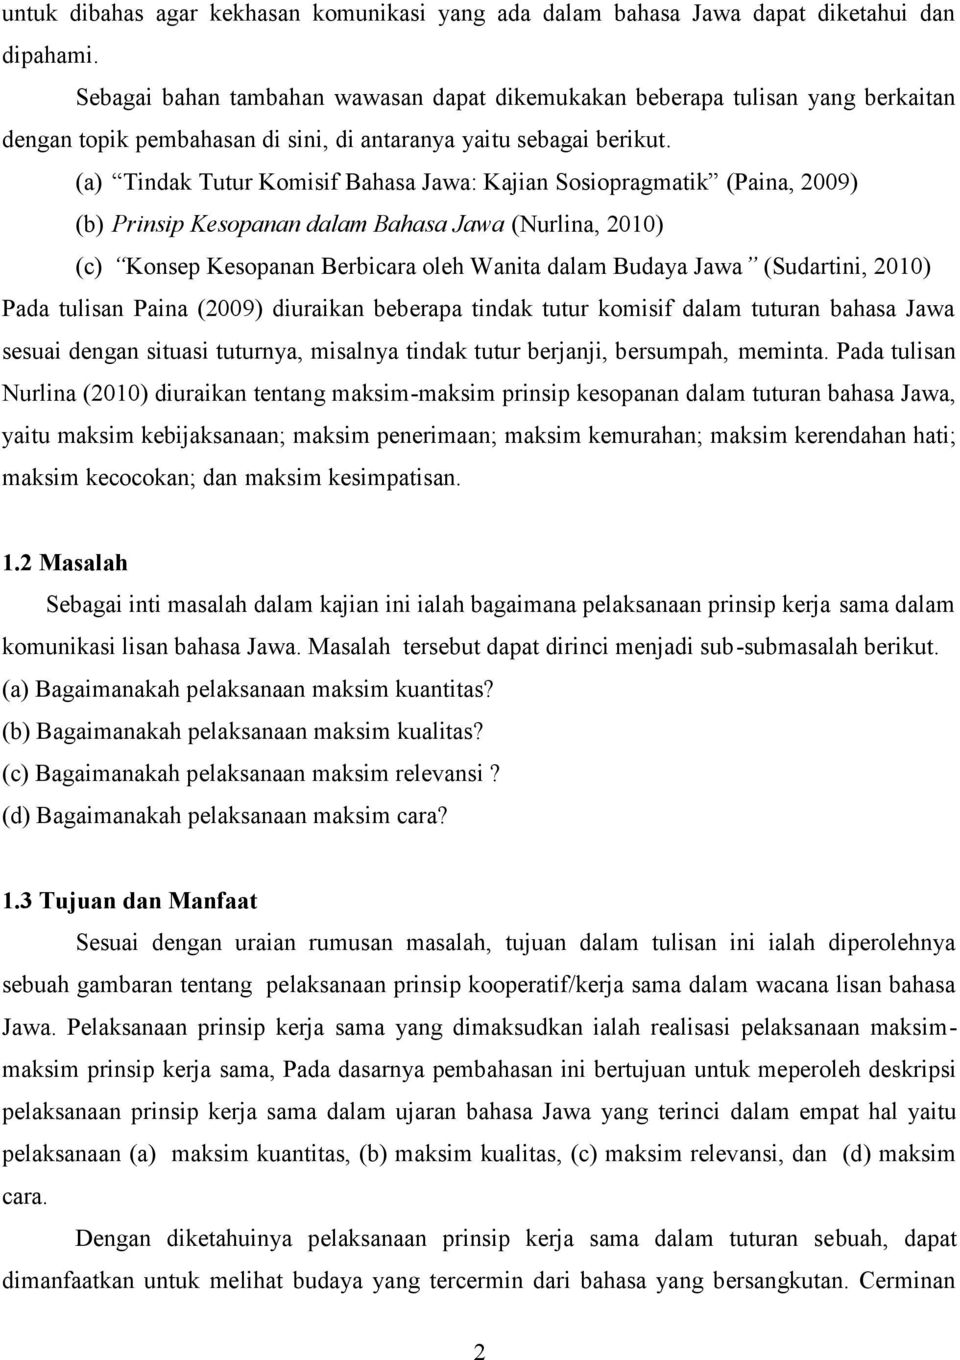 (a) Tindak Tutur Komisif Bahasa Jawa: Kajian Sosiopragmatik (Paina, 2009) (b) Prinsip Kesopanan dalam Bahasa Jawa (Nurlina, 2010) (c) Konsep Kesopanan Berbicara oleh Wanita dalam Budaya Jawa